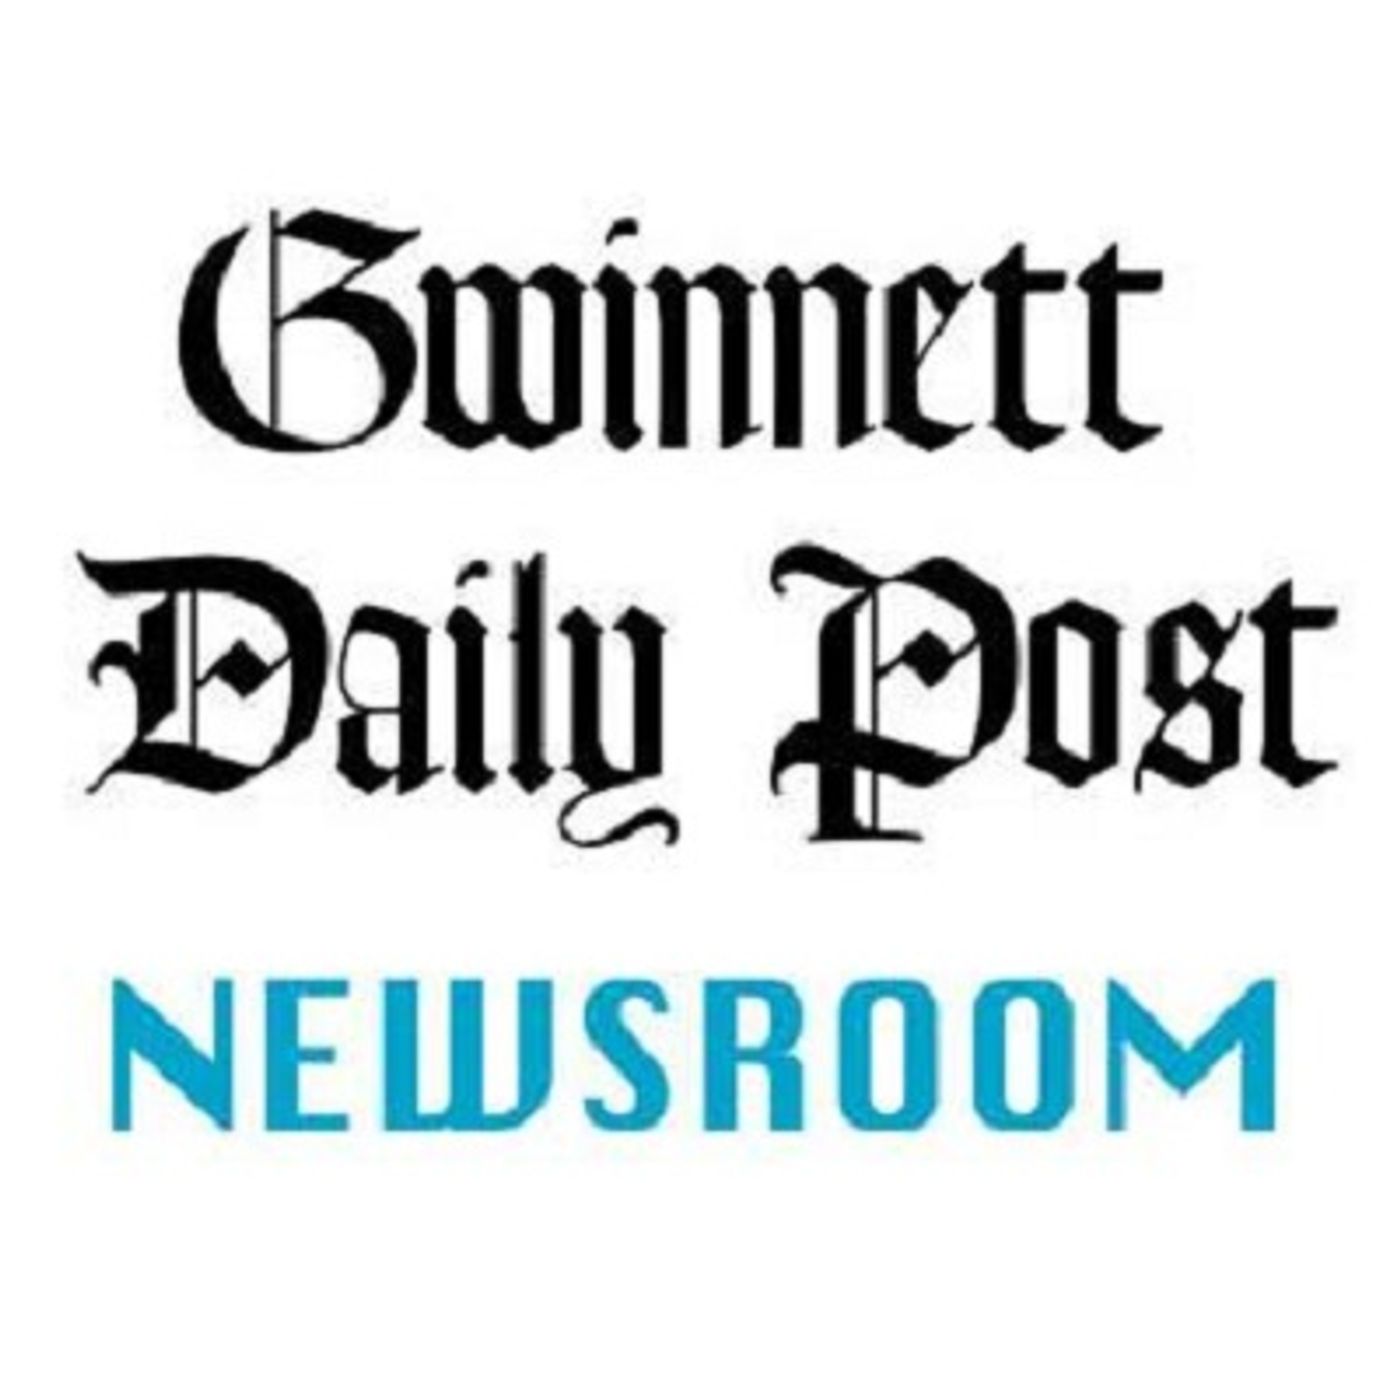 Gwinnett Daily Journal Has Been Sold